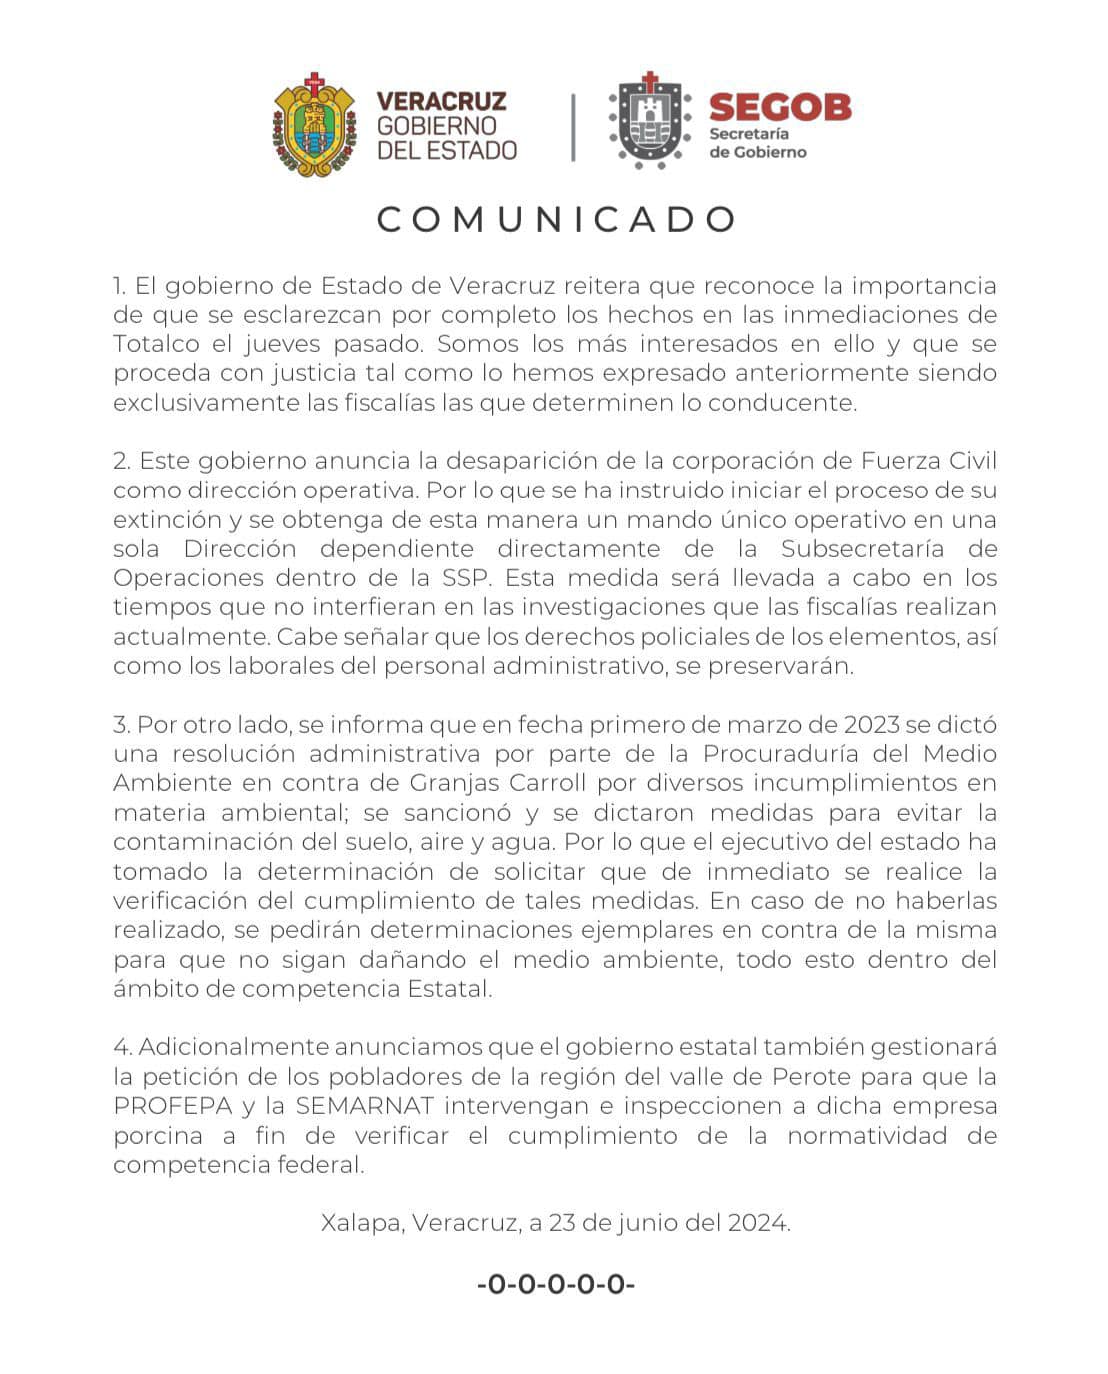 Extinguen Fuerza Civil de Veracruz tras los hechos ocurridos en el municipio de Perote